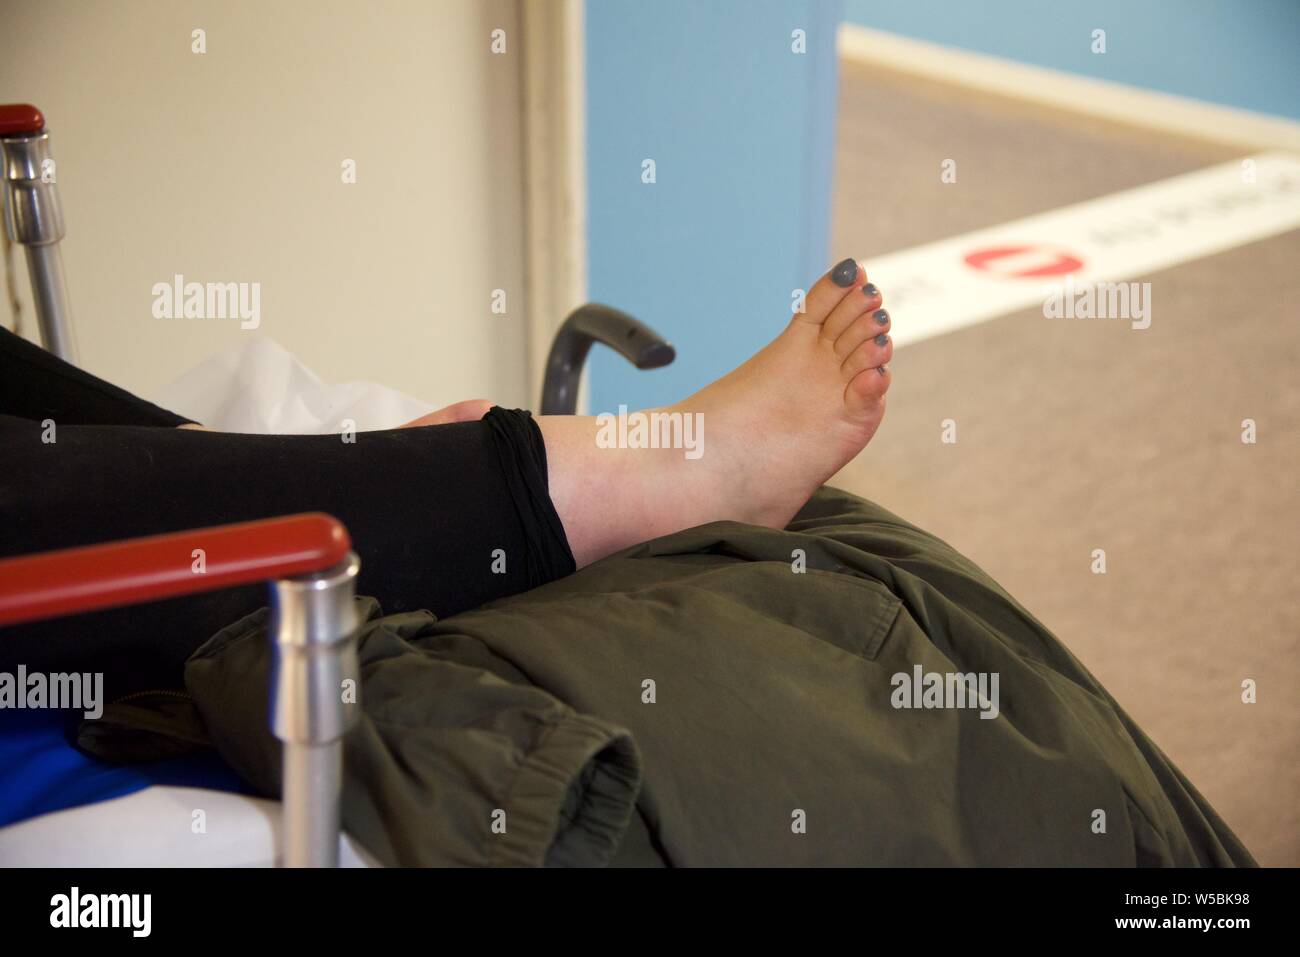 Cheville cassée : une femme avec une fracture à la cheville droite attend sur une civière dans le couloir d'un service d'urgence hospitalier Banque D'Images